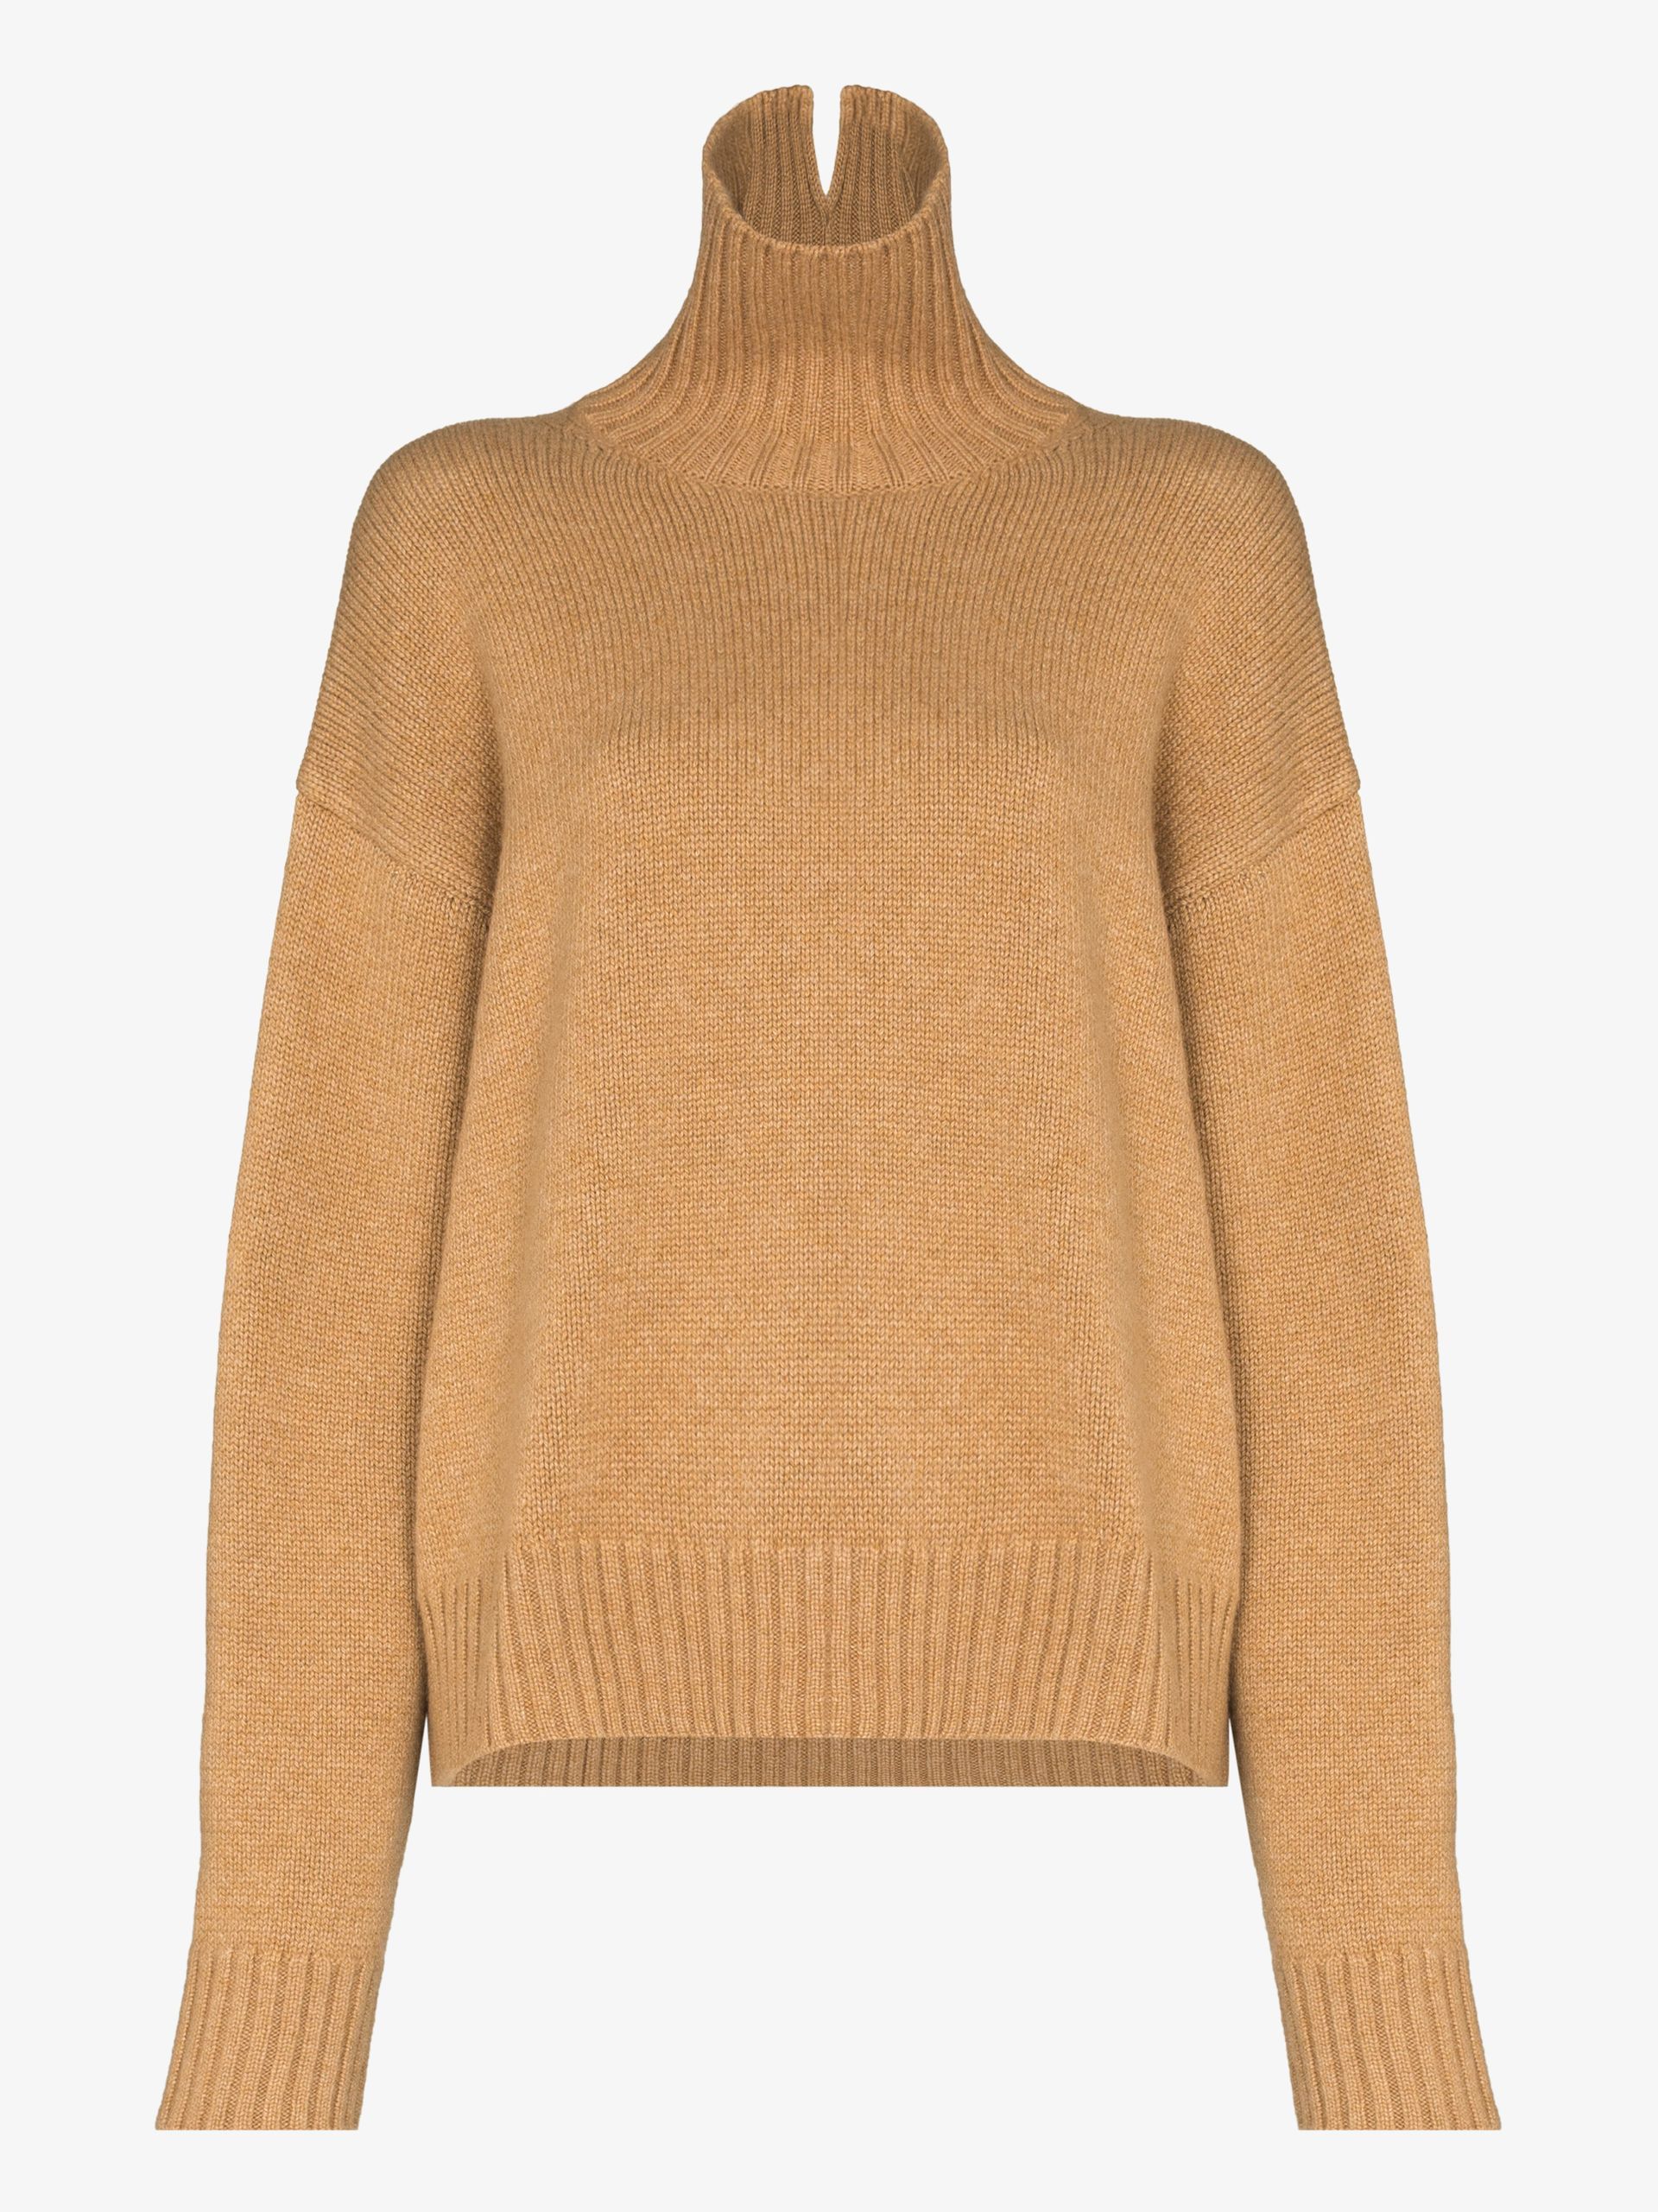 Luxury Women Cashmere Knitwear Jumper Turtleneck Pullover Loose Sweater Tops